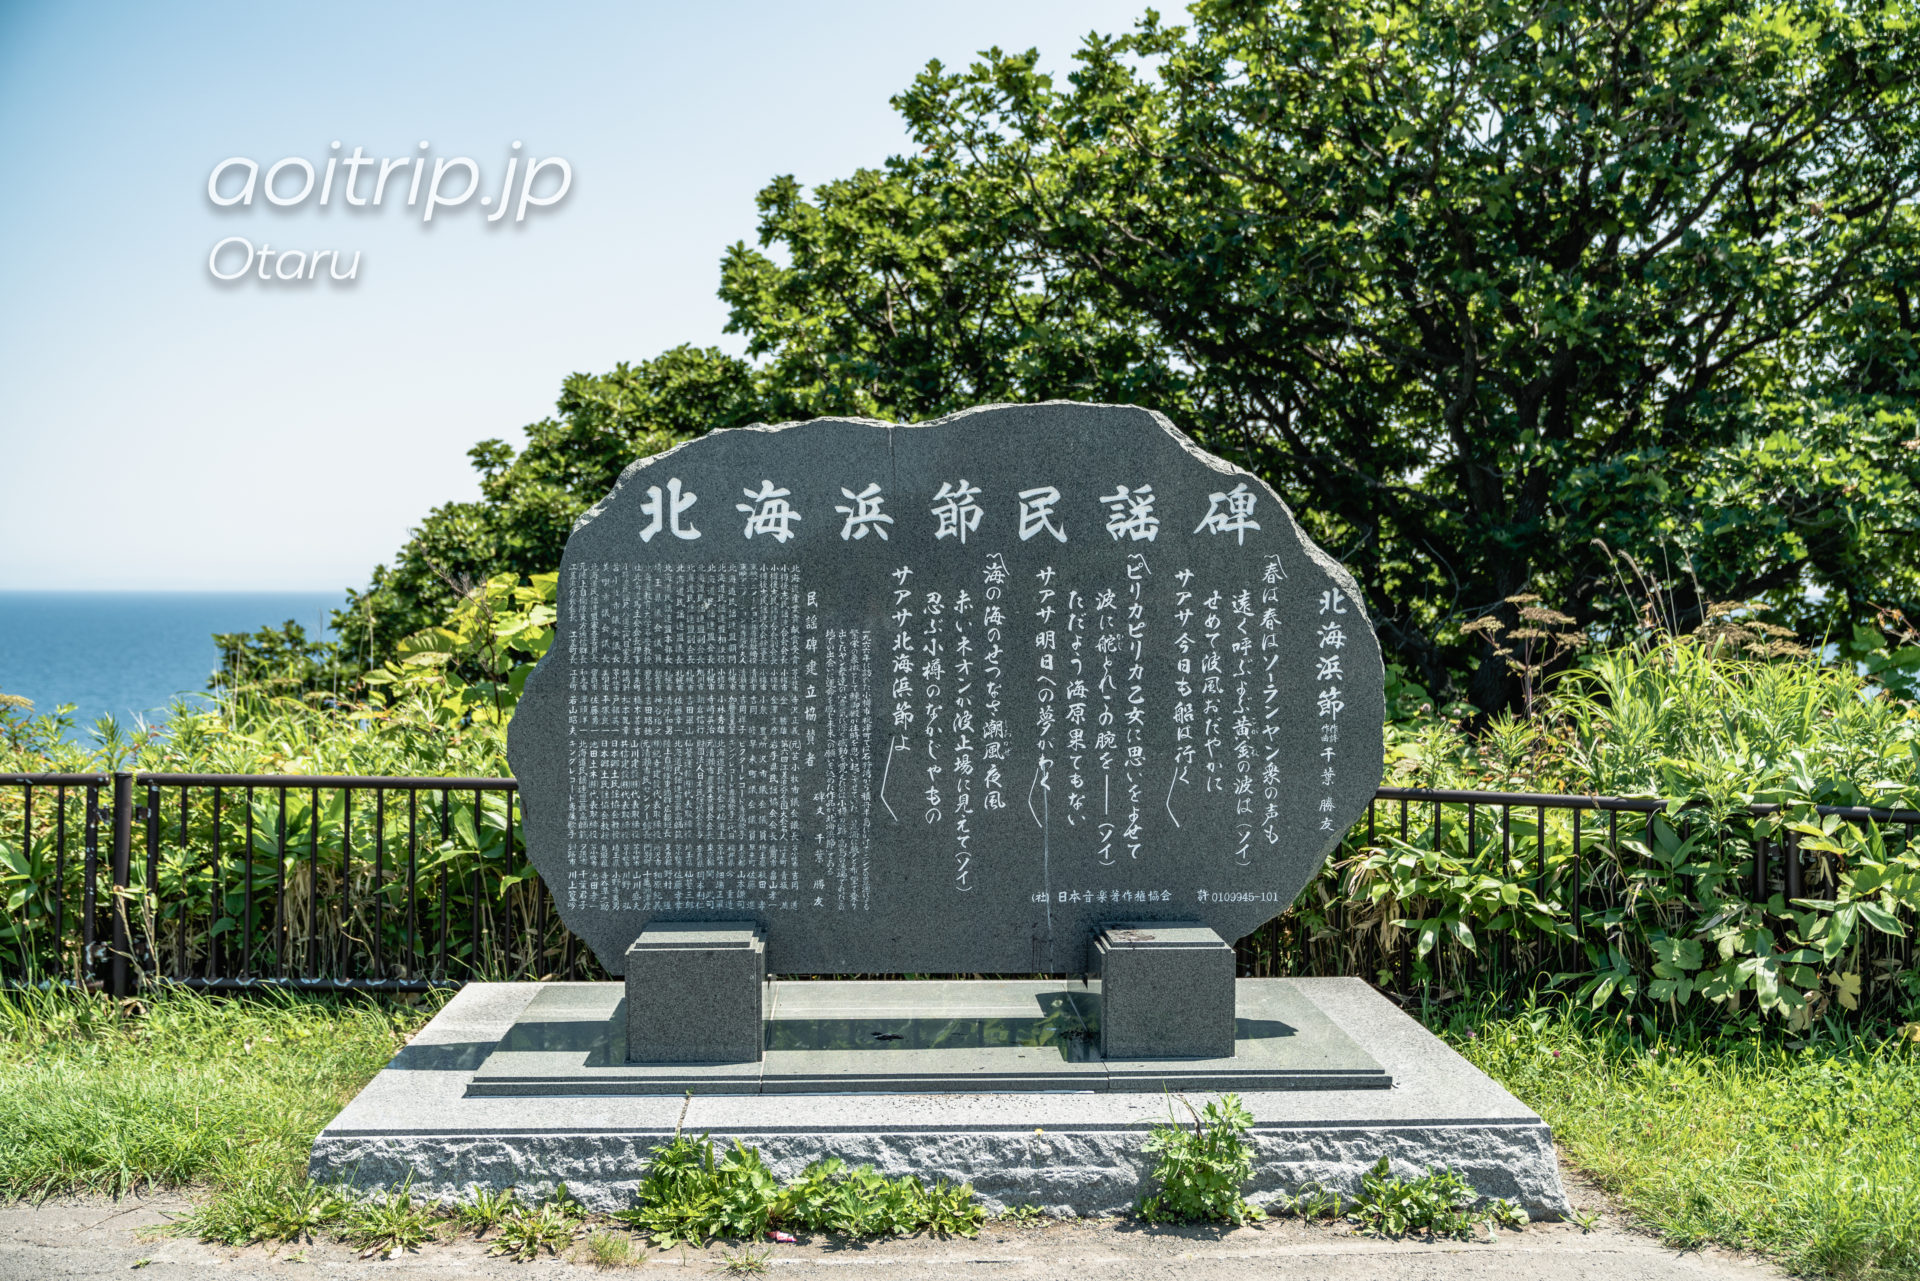 小樽祝津パノラマ展望台 Shukutsu Panorama Observation Deck, Otaru